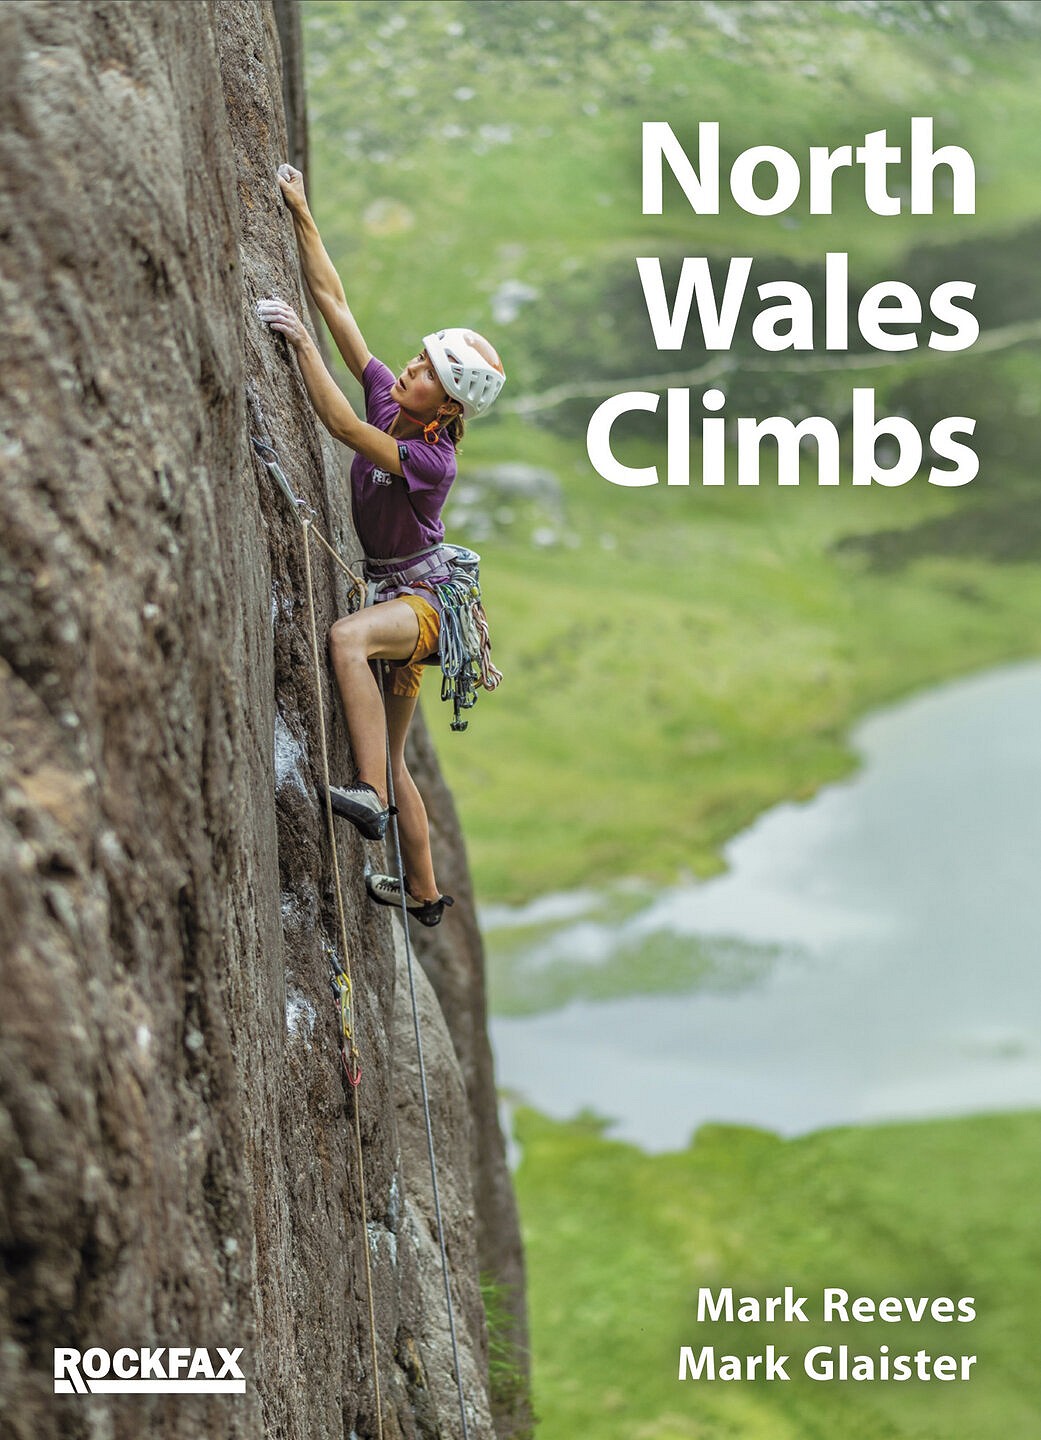 North Wales Climbs Rockfax Cover  © Rockfax